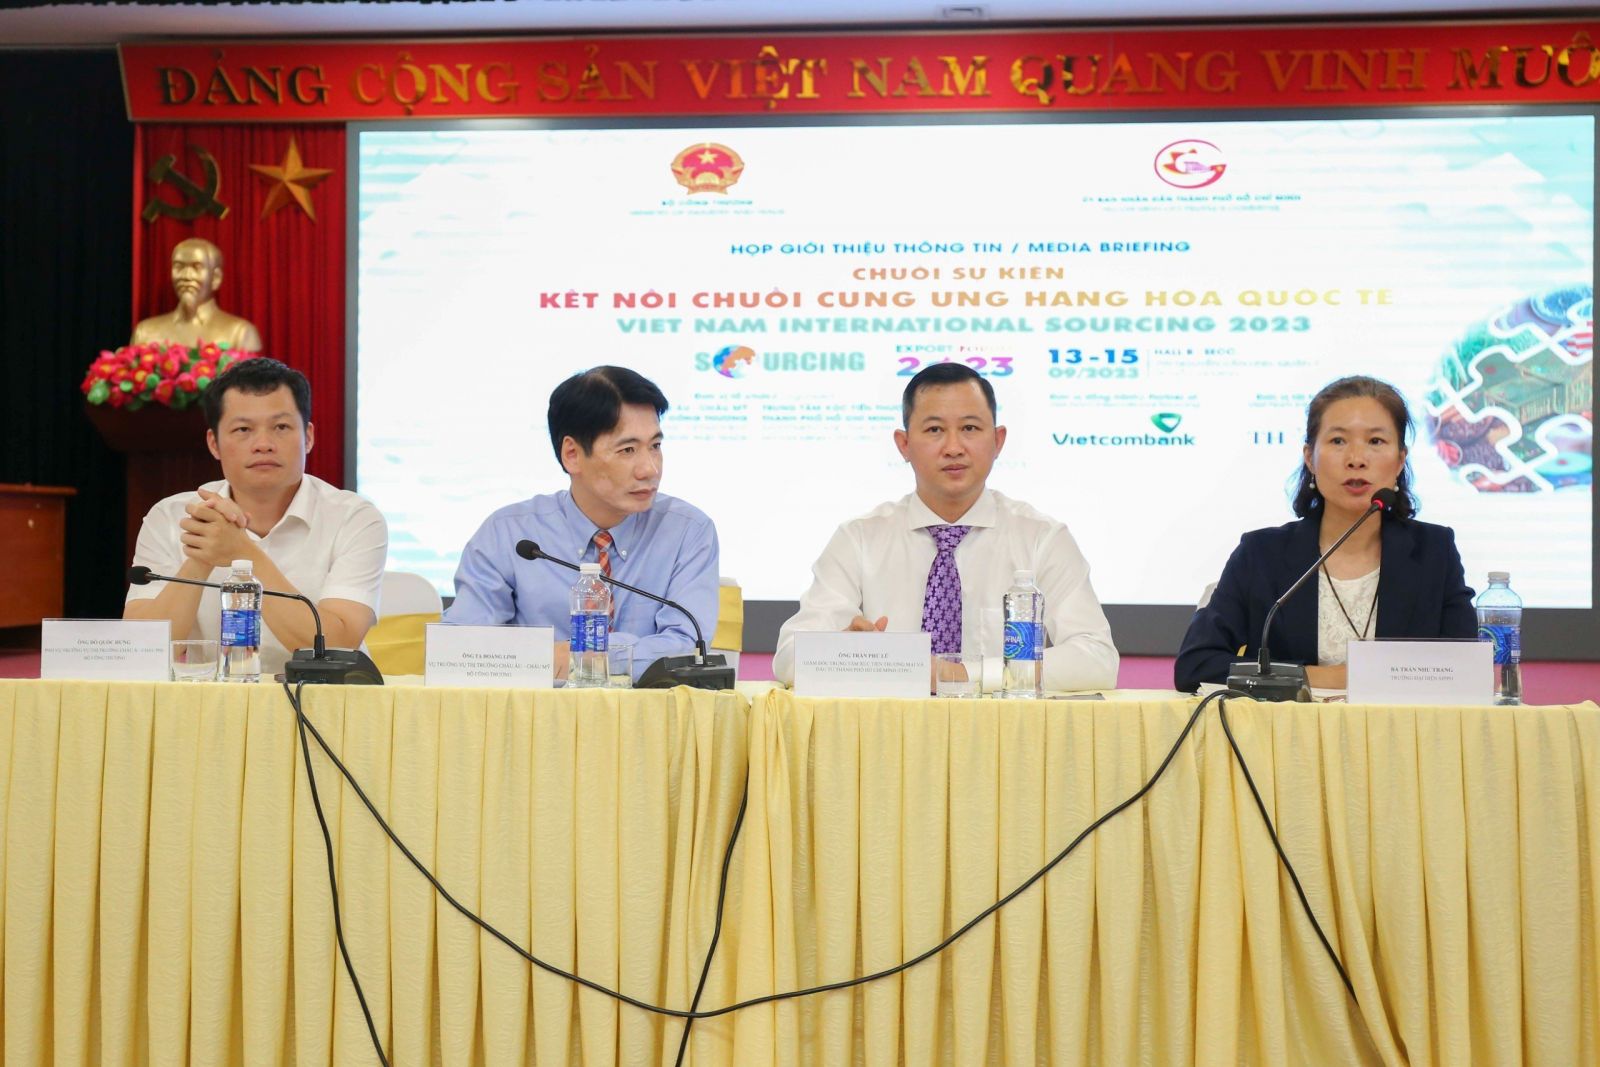 Họp báo giới thiệu thông Chuỗi sự kiện cung ứng hàng hóa quốc tế - Viet Nam International Sourcing 2023 vào ngày 7.9 tại trụ sở Bộ Công Thương.